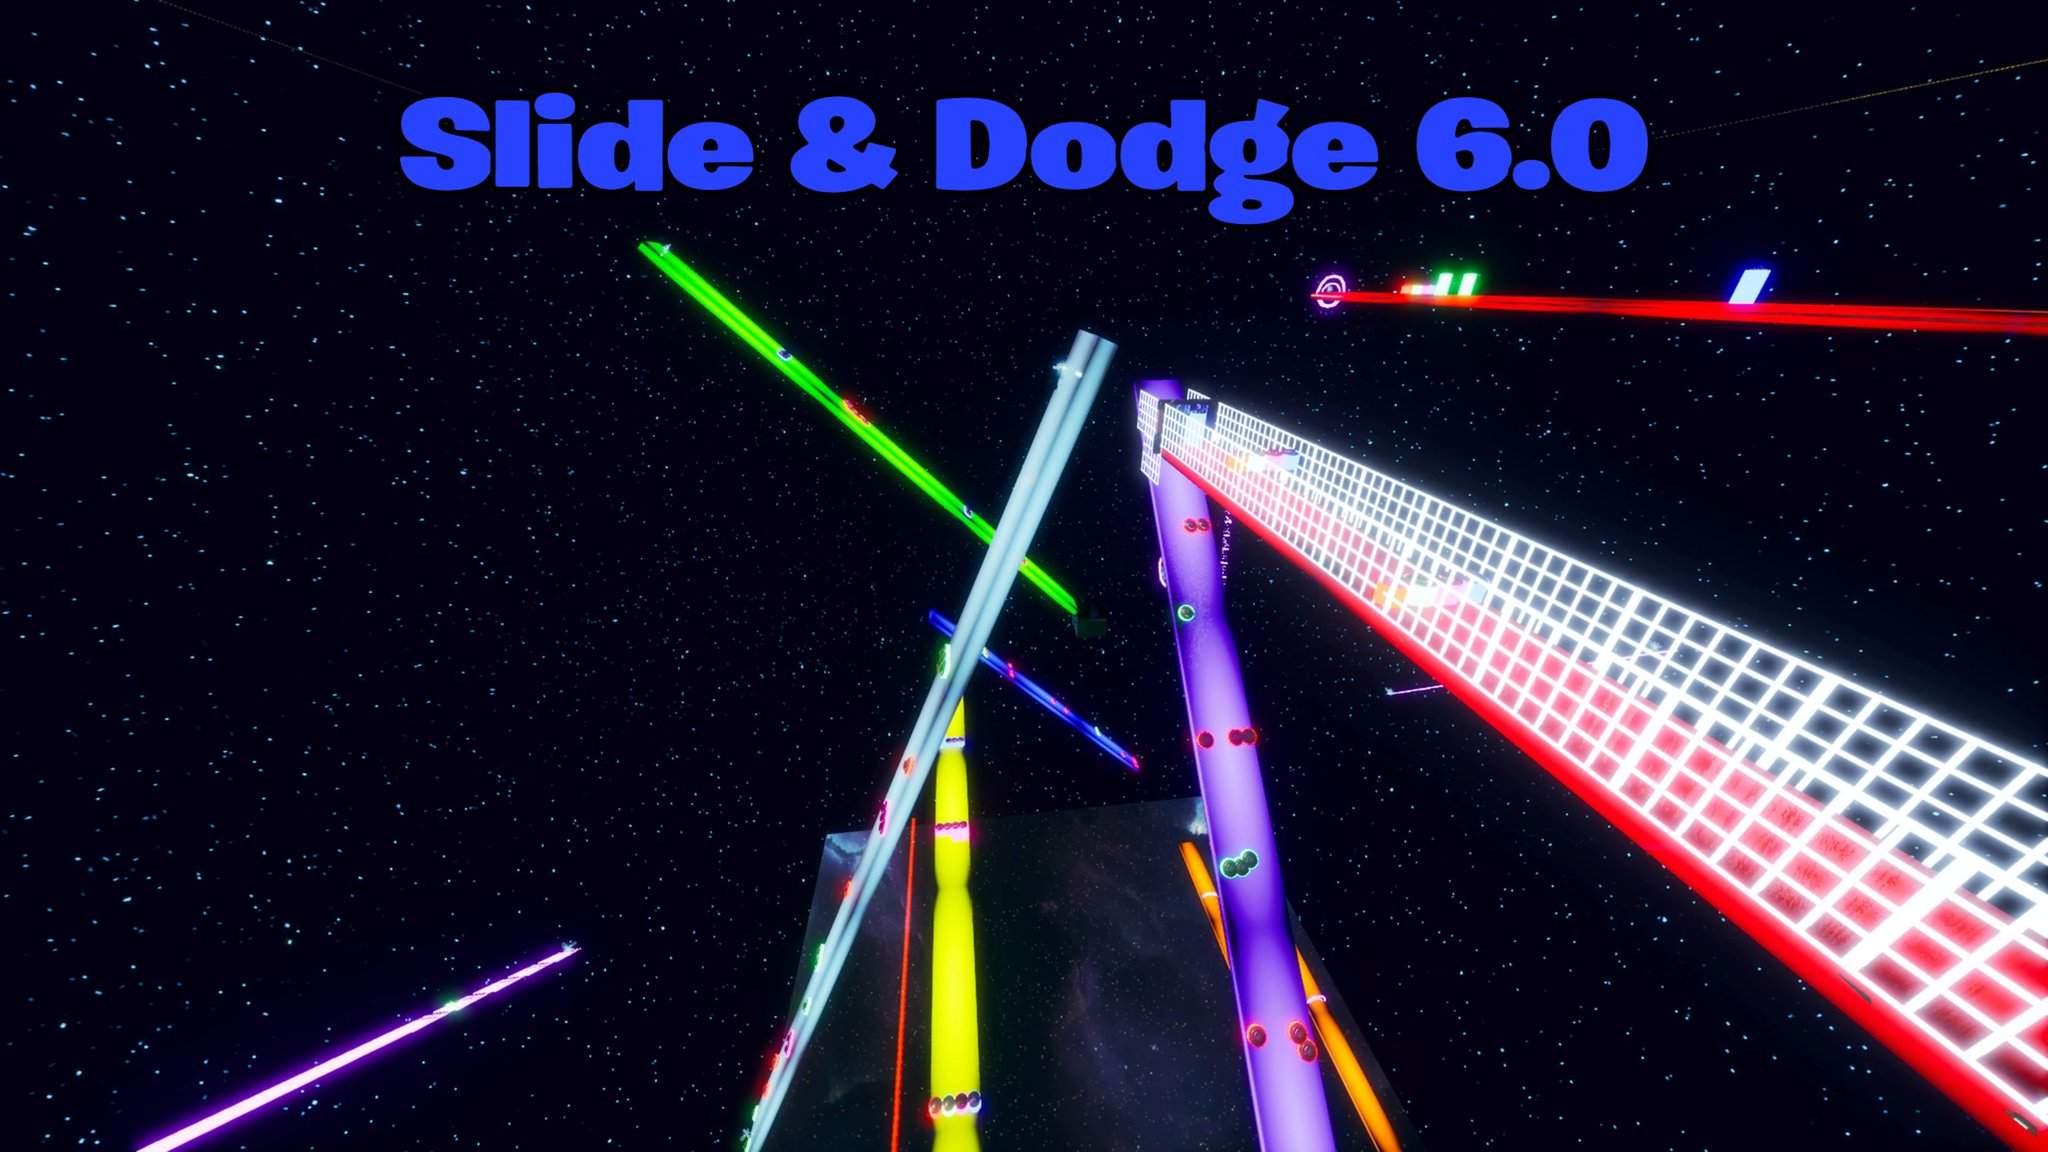 SLIDE & DODGE 6.0